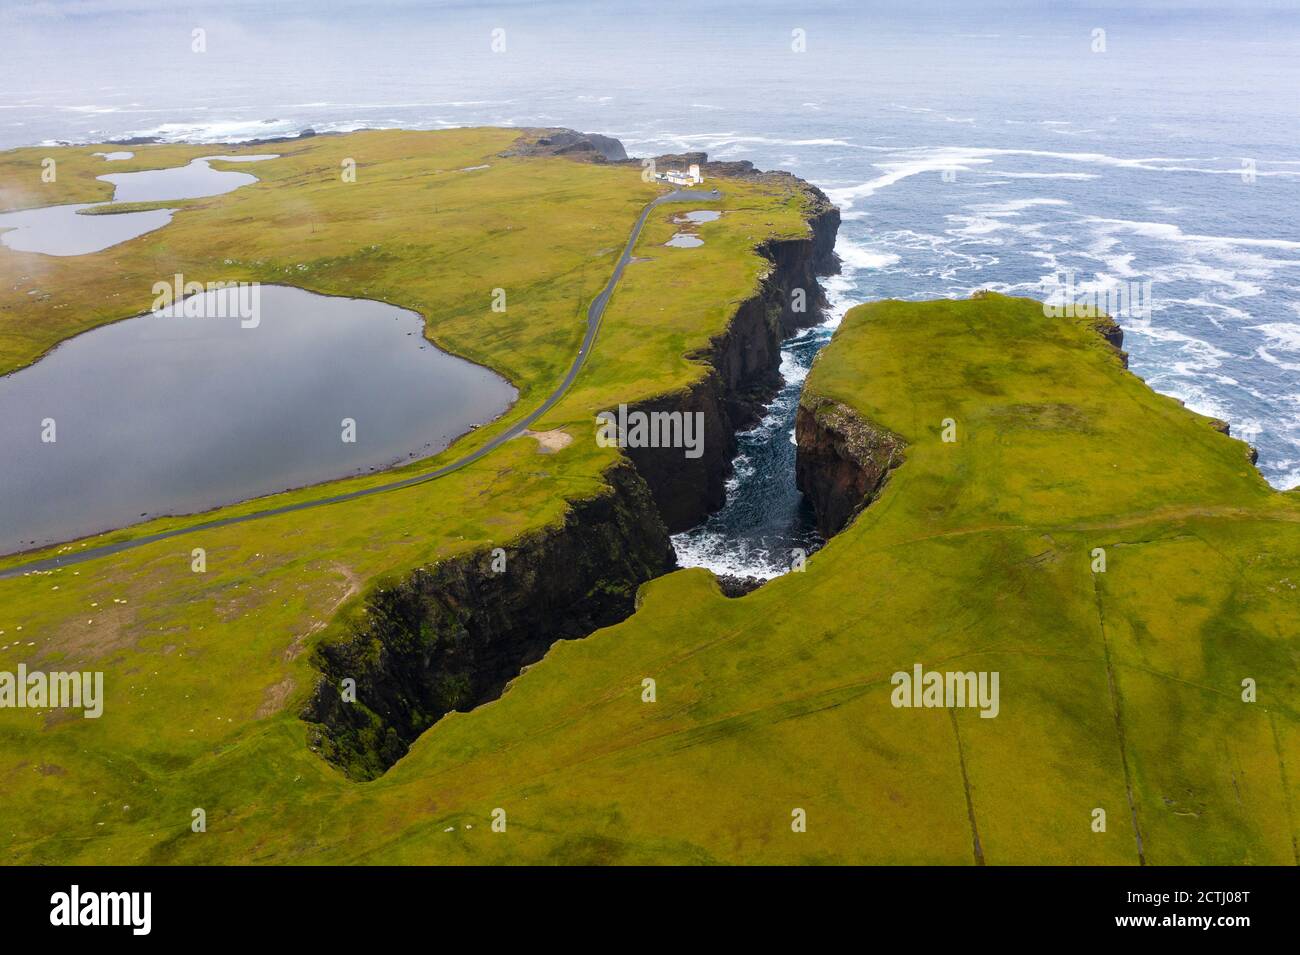 En regardant vers le bas sur Calder's Geo et phare sur la côte à Eshaness à Northmavine , partie continentale nord des îles Shetland, Écosse, Royaume-Uni Banque D'Images